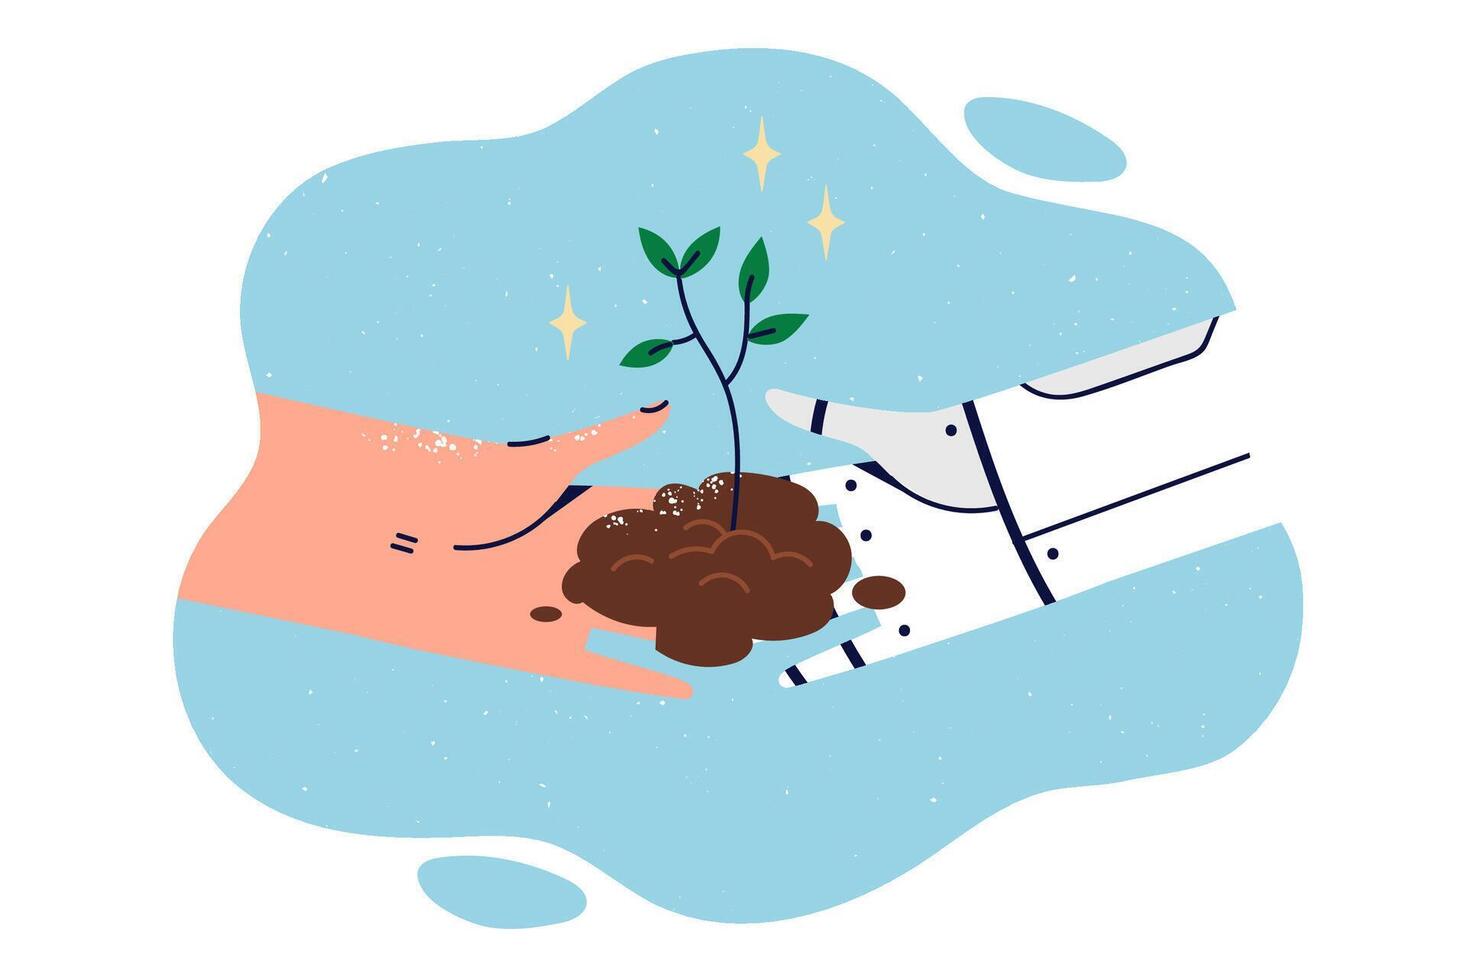 robot y persona planta árbol juntos a salvar ambiente y ayuda restaurar naturaleza vector